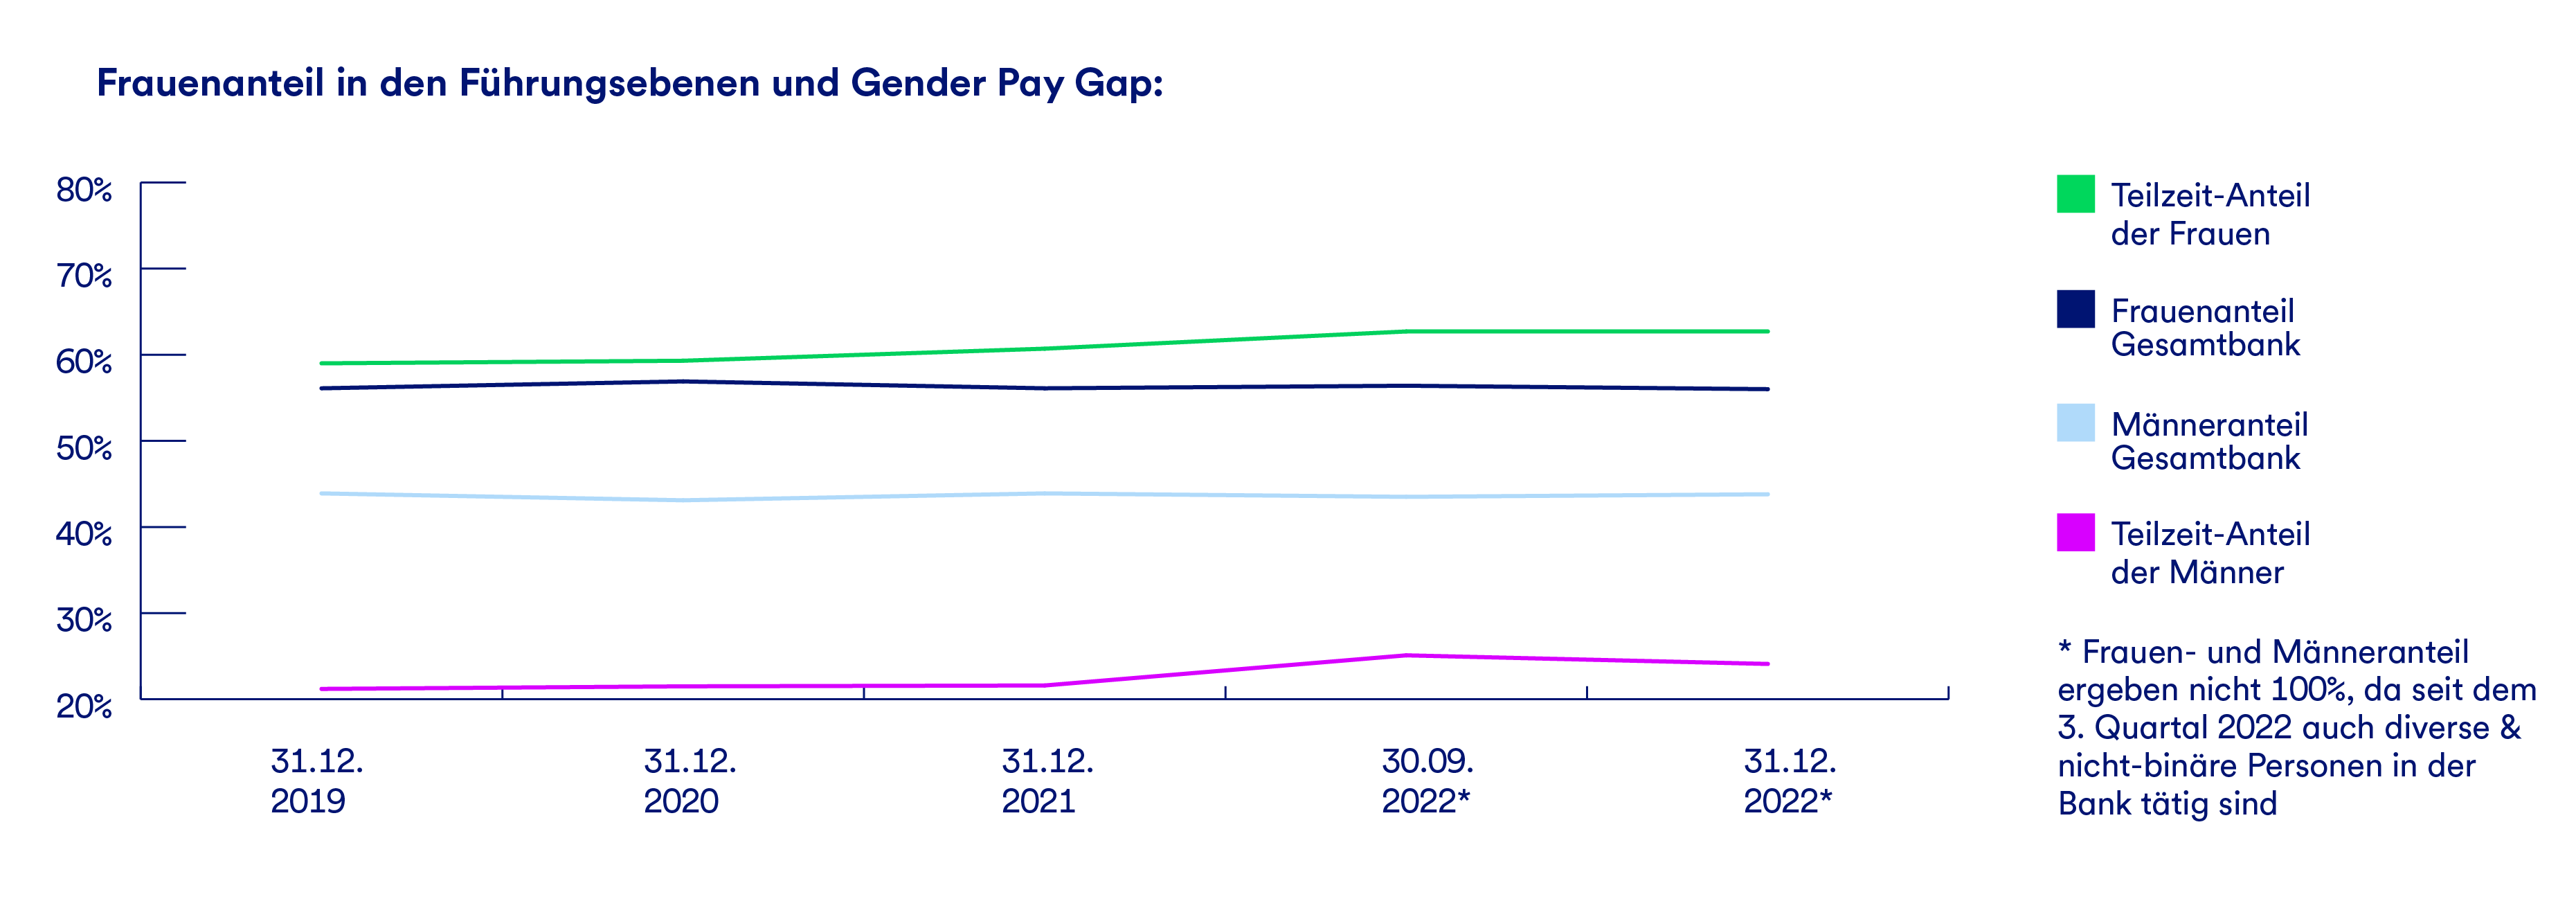 Ein Graph, der den Frauenanteil in den Führungsebenen und den Gender-Pay-Gap darstellt.